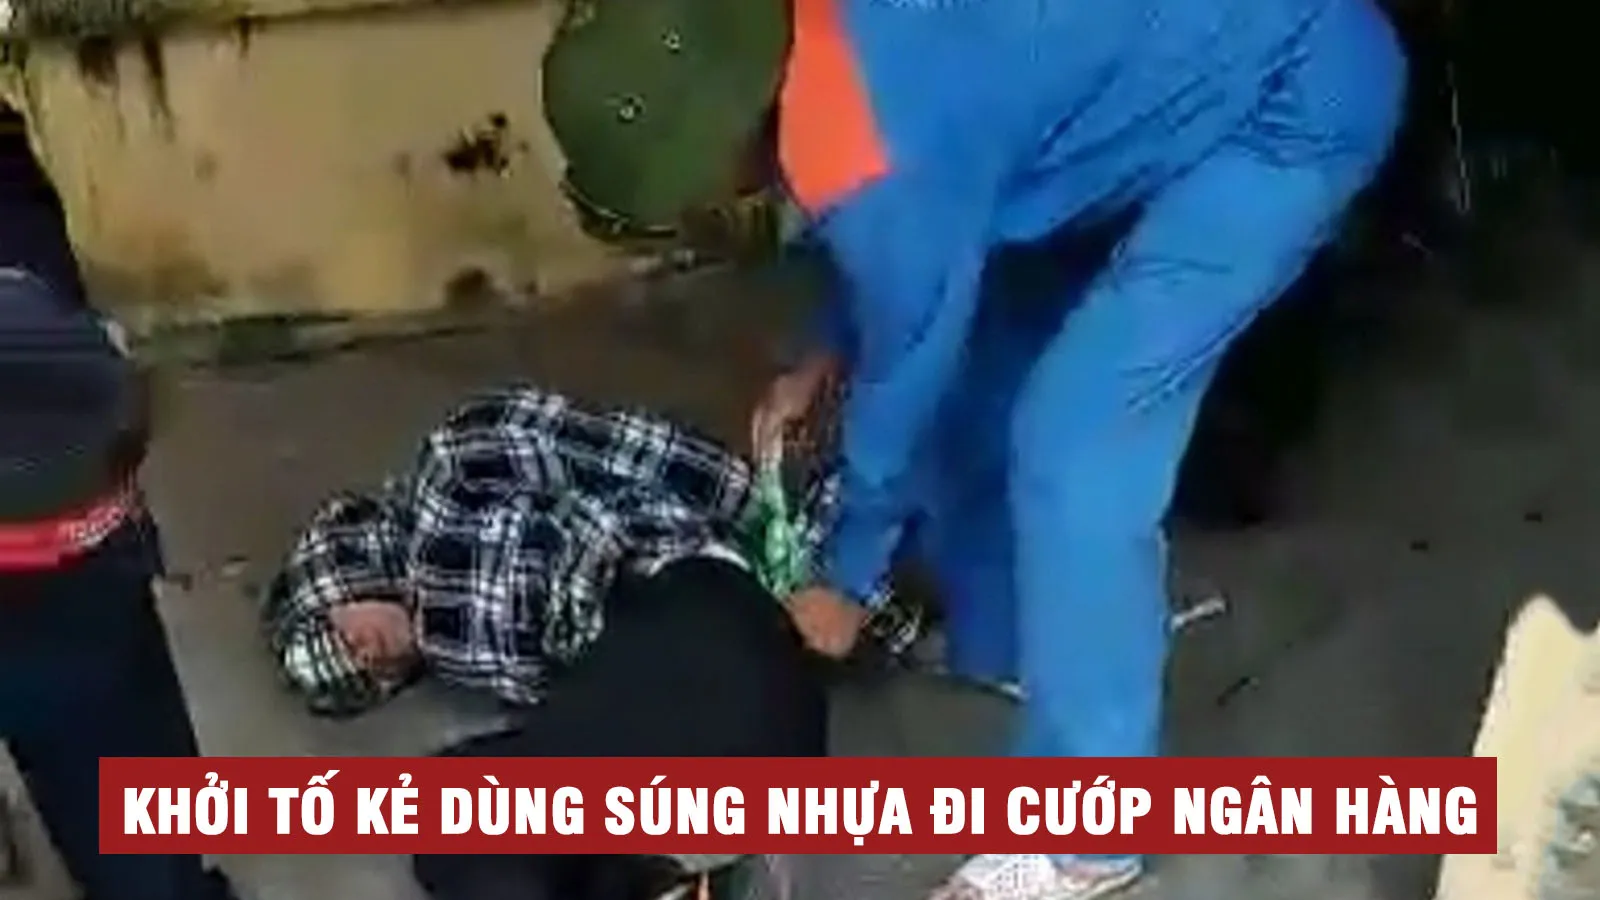 Tin nhanh trưa 21/7: Khởi tố nam thanh niên vác súng nhựa cướp ngân hàng ở Thái Bình